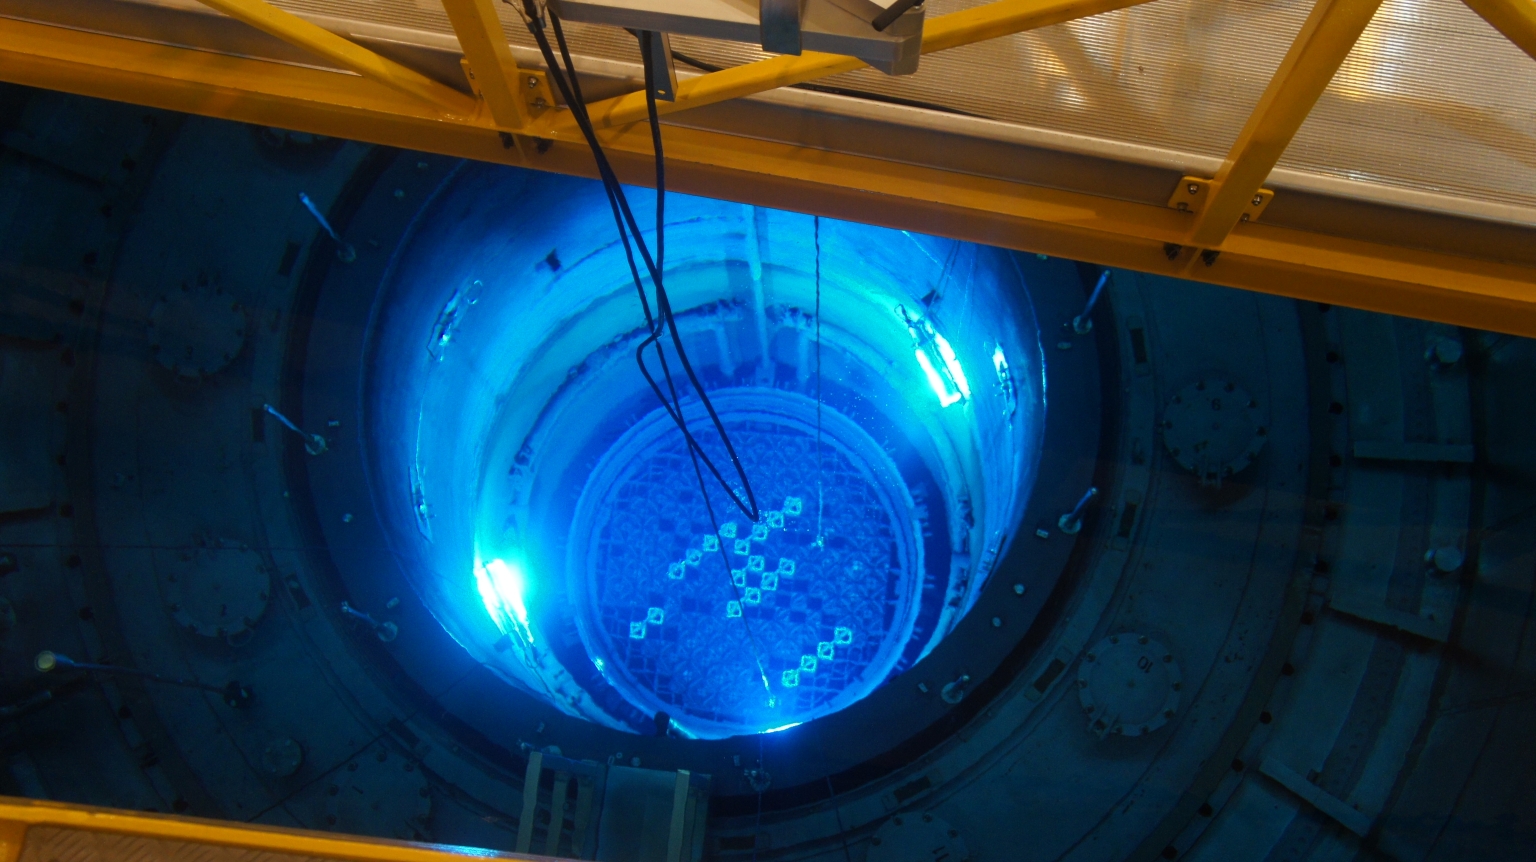 Aucun défaut n’a été détecté sur la cuve du réacteur de la centrale nucléaire de Mühleberg. Les contrôles par ultrasons effectués par BKW en ont donné la confirmation.